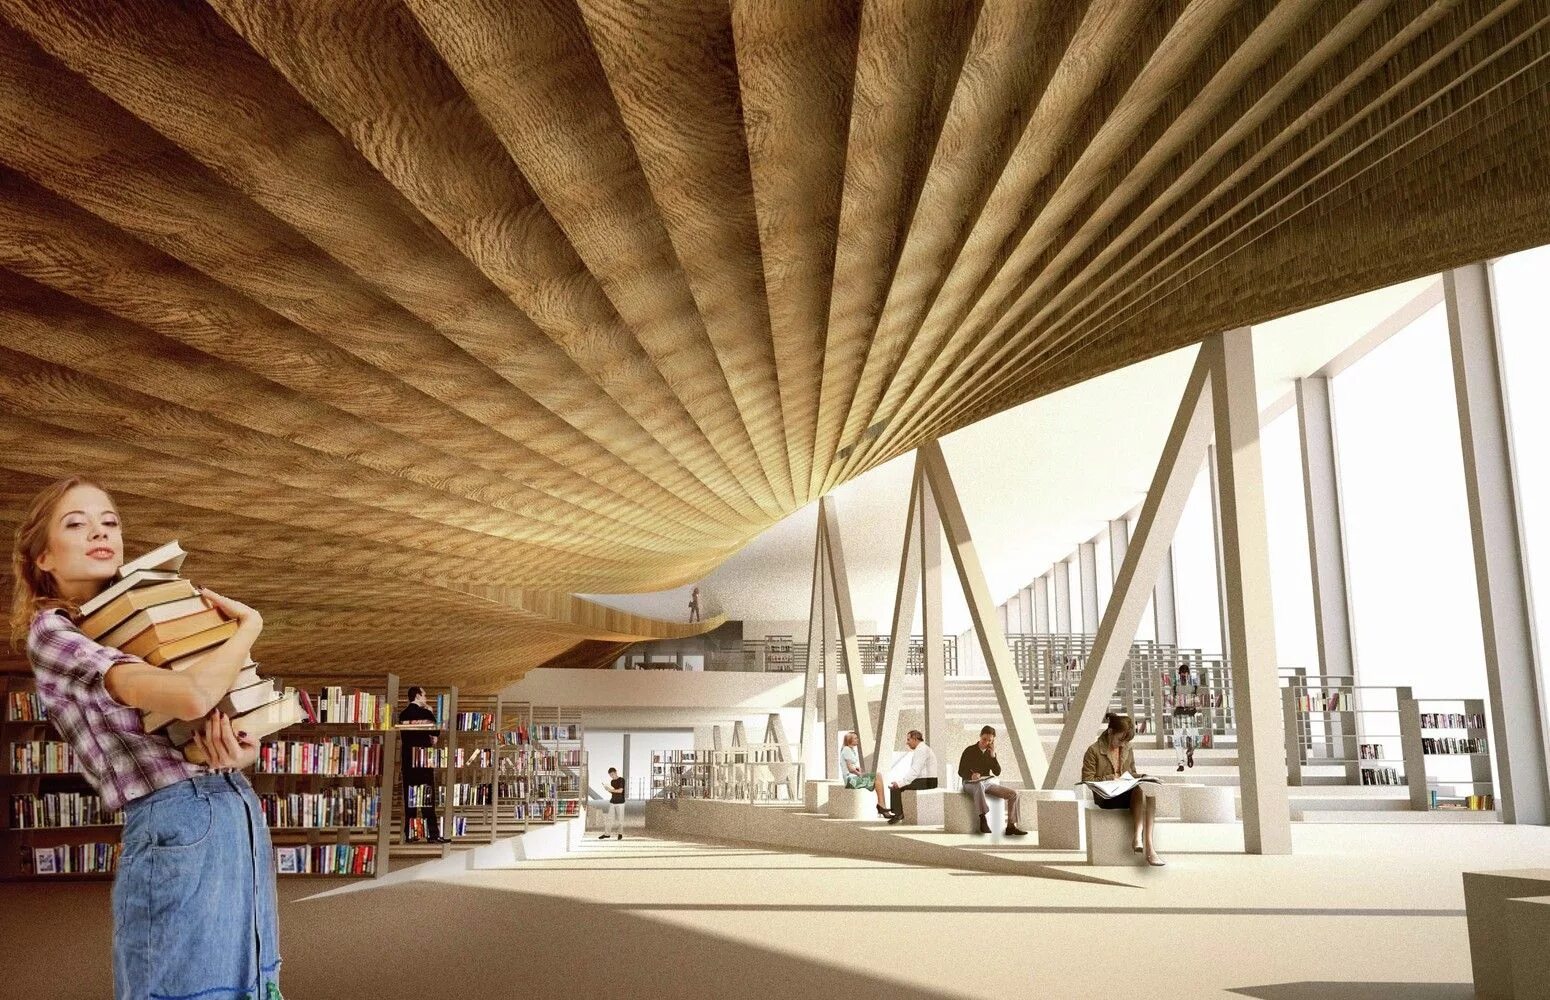 Learning architecture. Библиотека в Хельсинки архитектура. Проект библиотеки. Современная архитектура библиотека. Проект библиотеки архитектура интерьер.